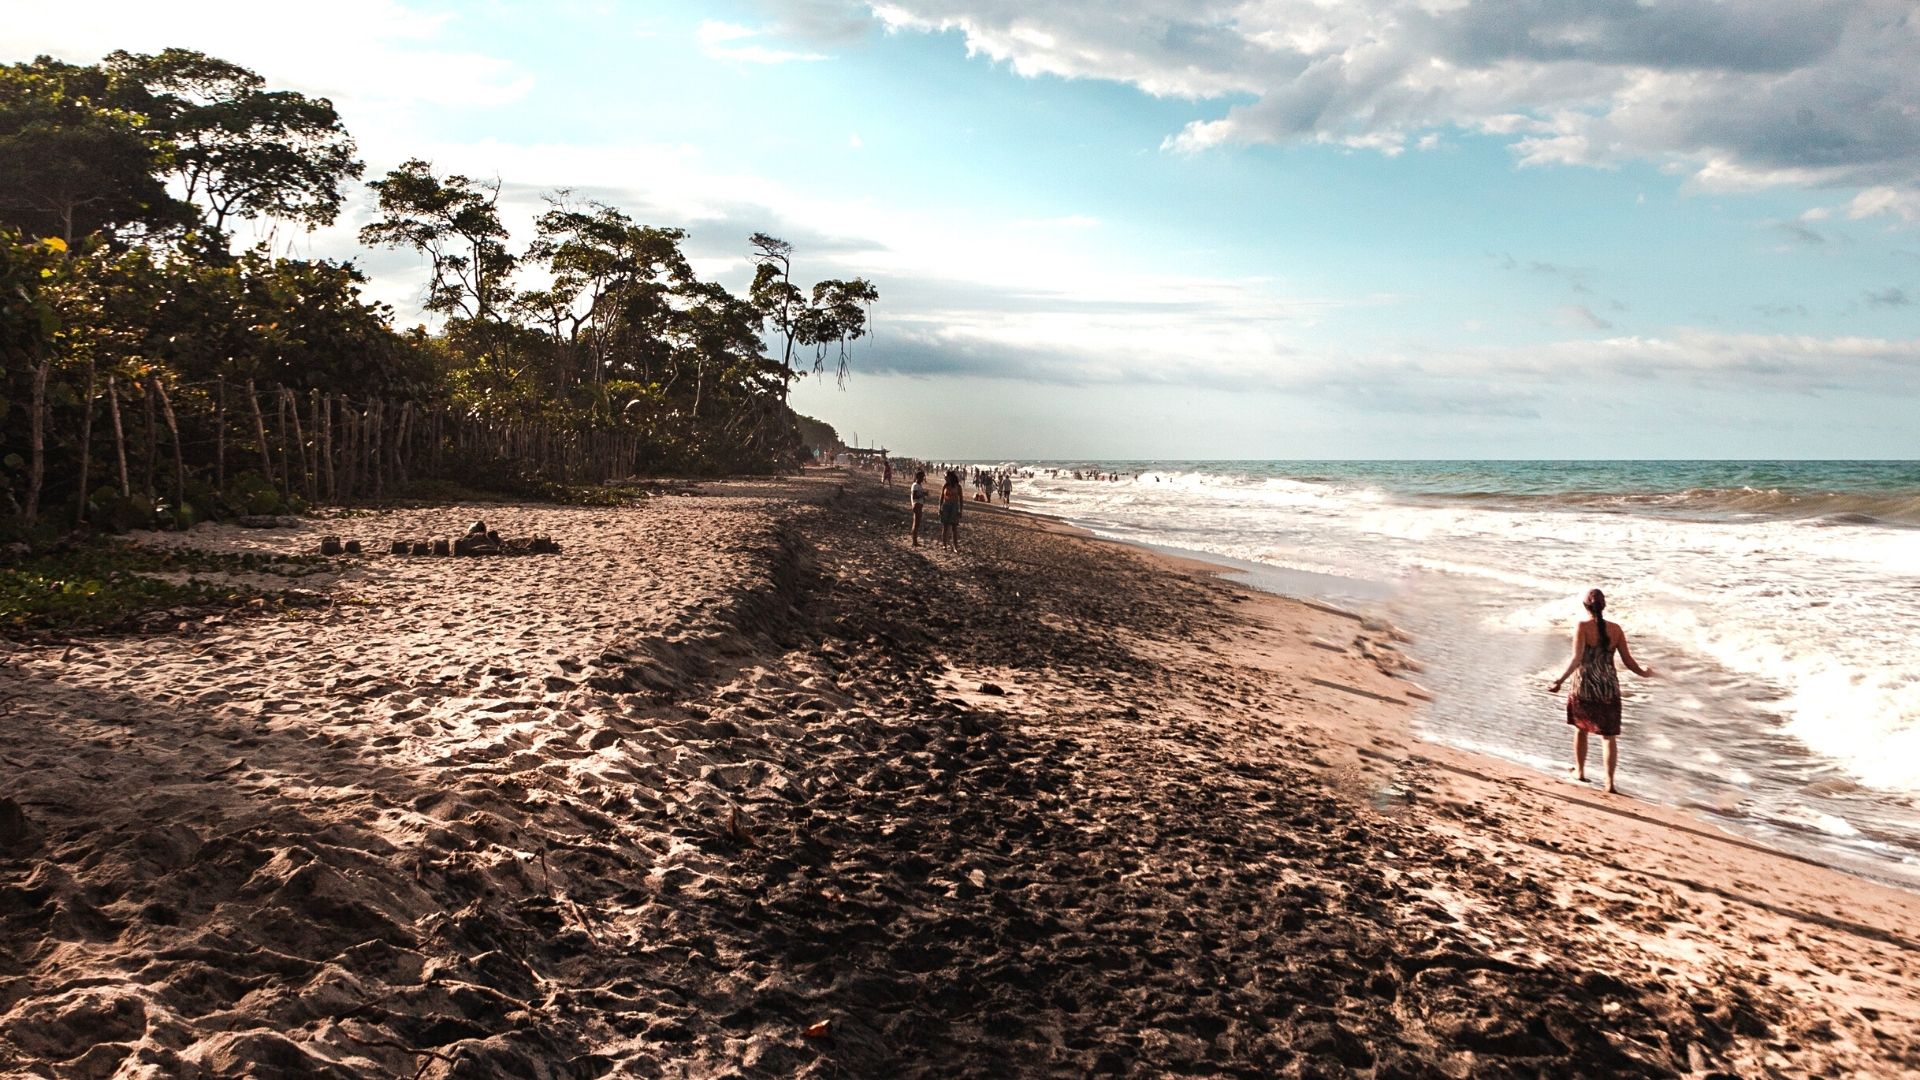 Playas de Palomino, municipio en donde se encuentra ubicado el hotel  One Santuario Natural. Foto: Wikimedia Commons / Juan Gomez